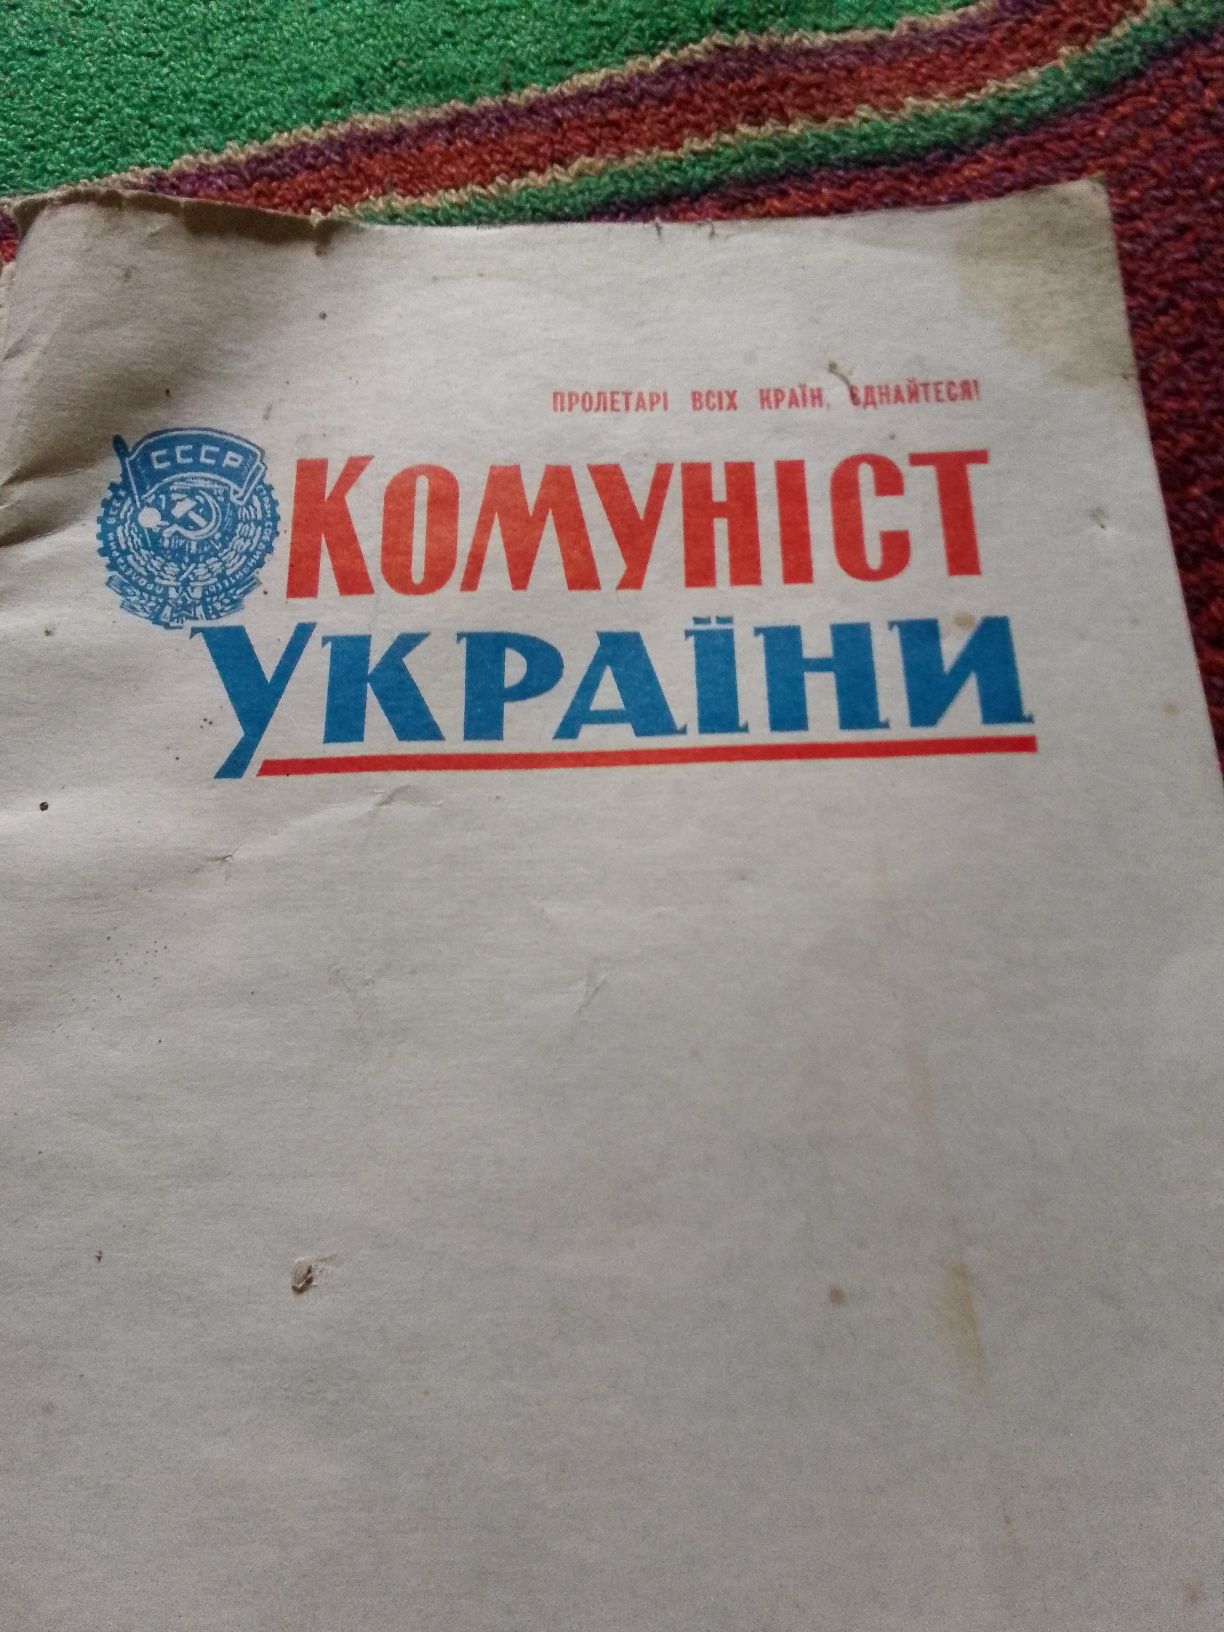 Стариэ книги про СССР и украину